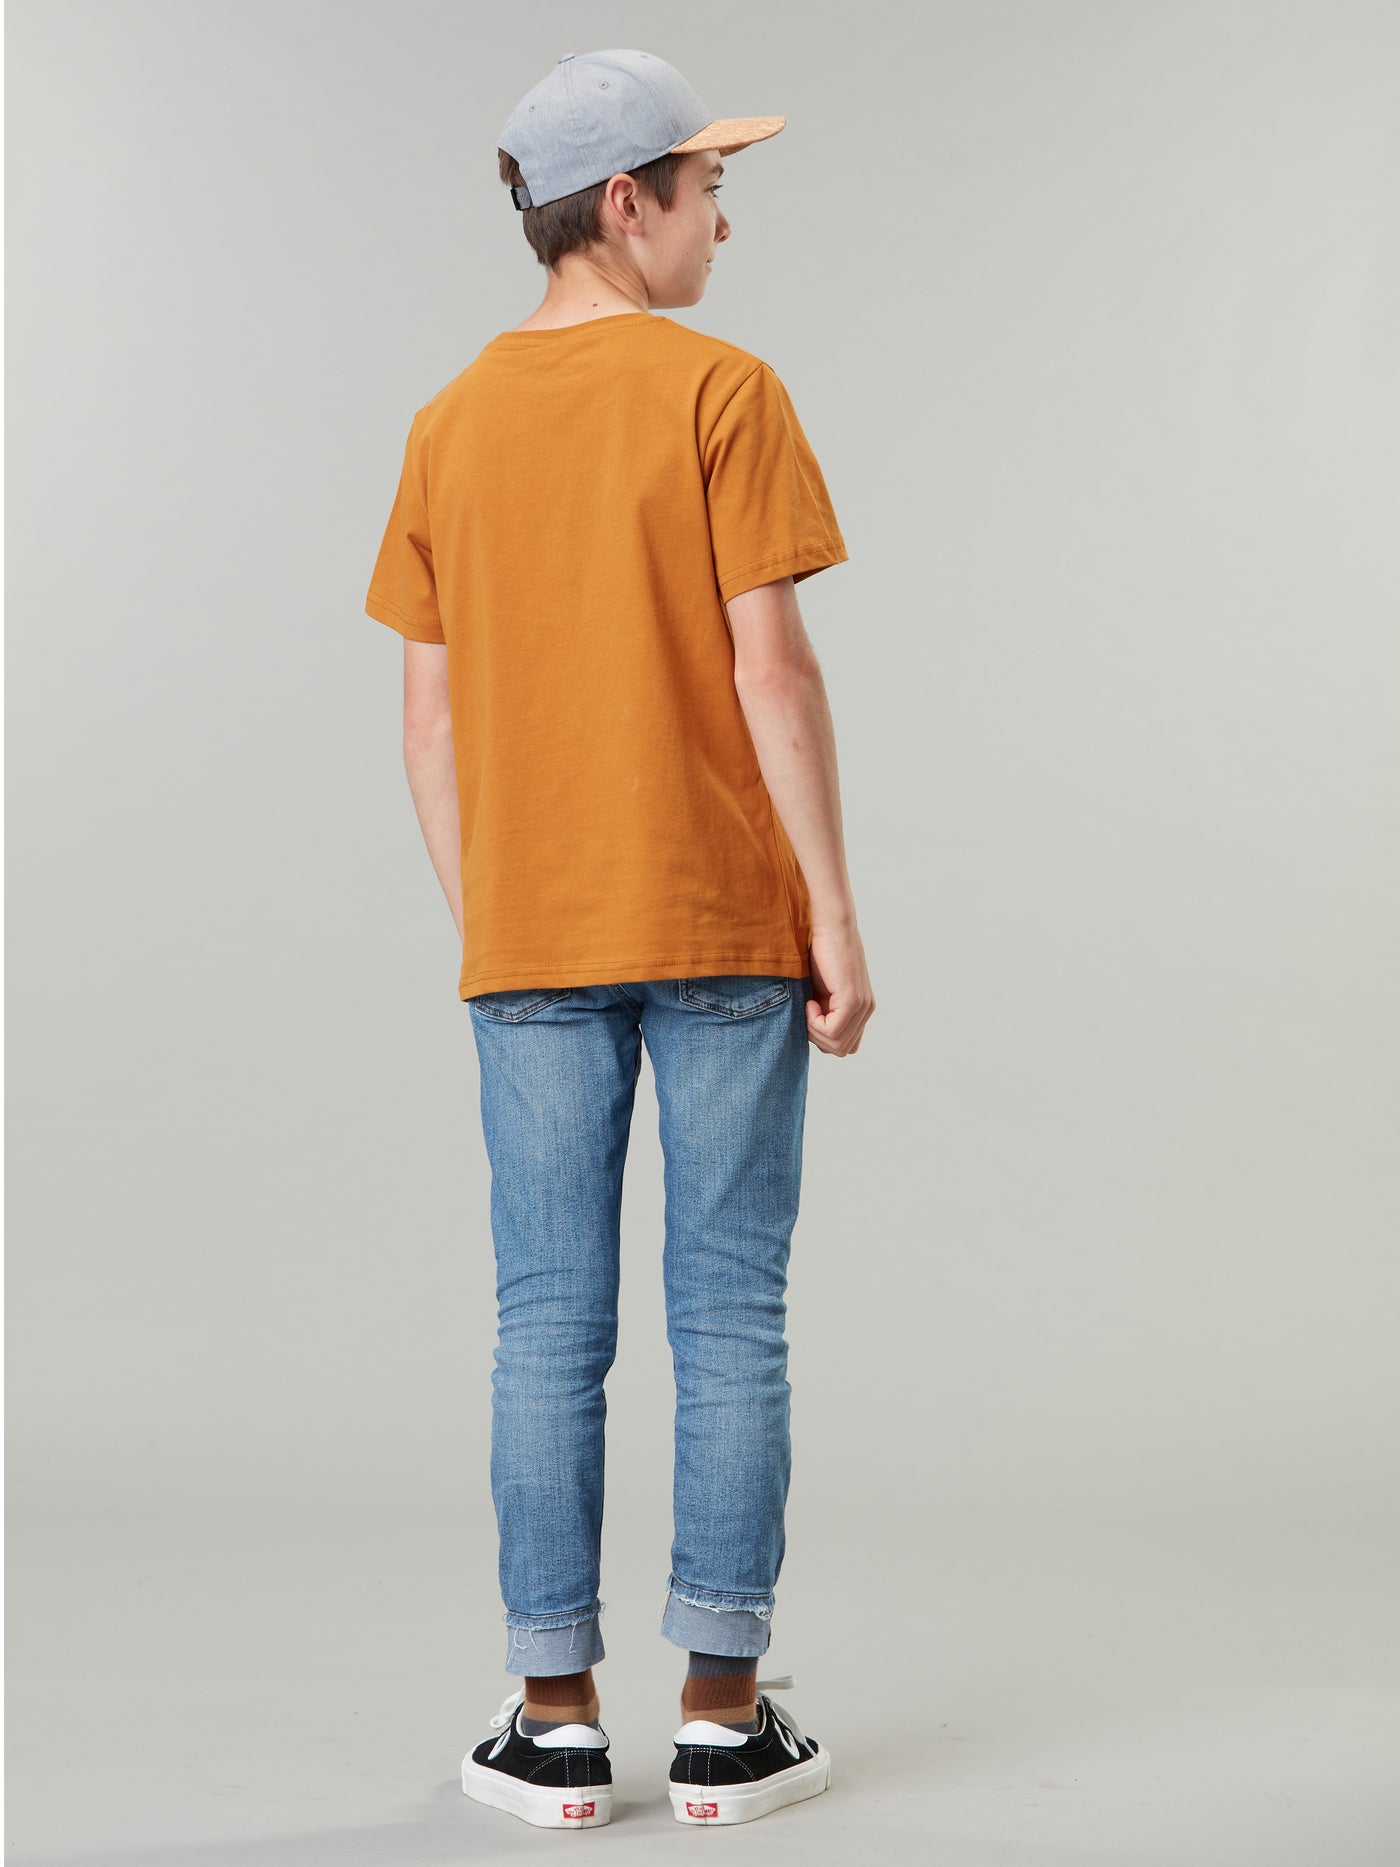 Picture Organicin Nausta lasten ja nuorten t-paita pumpkin sky värissä pojan päällä takaa kuvattuna